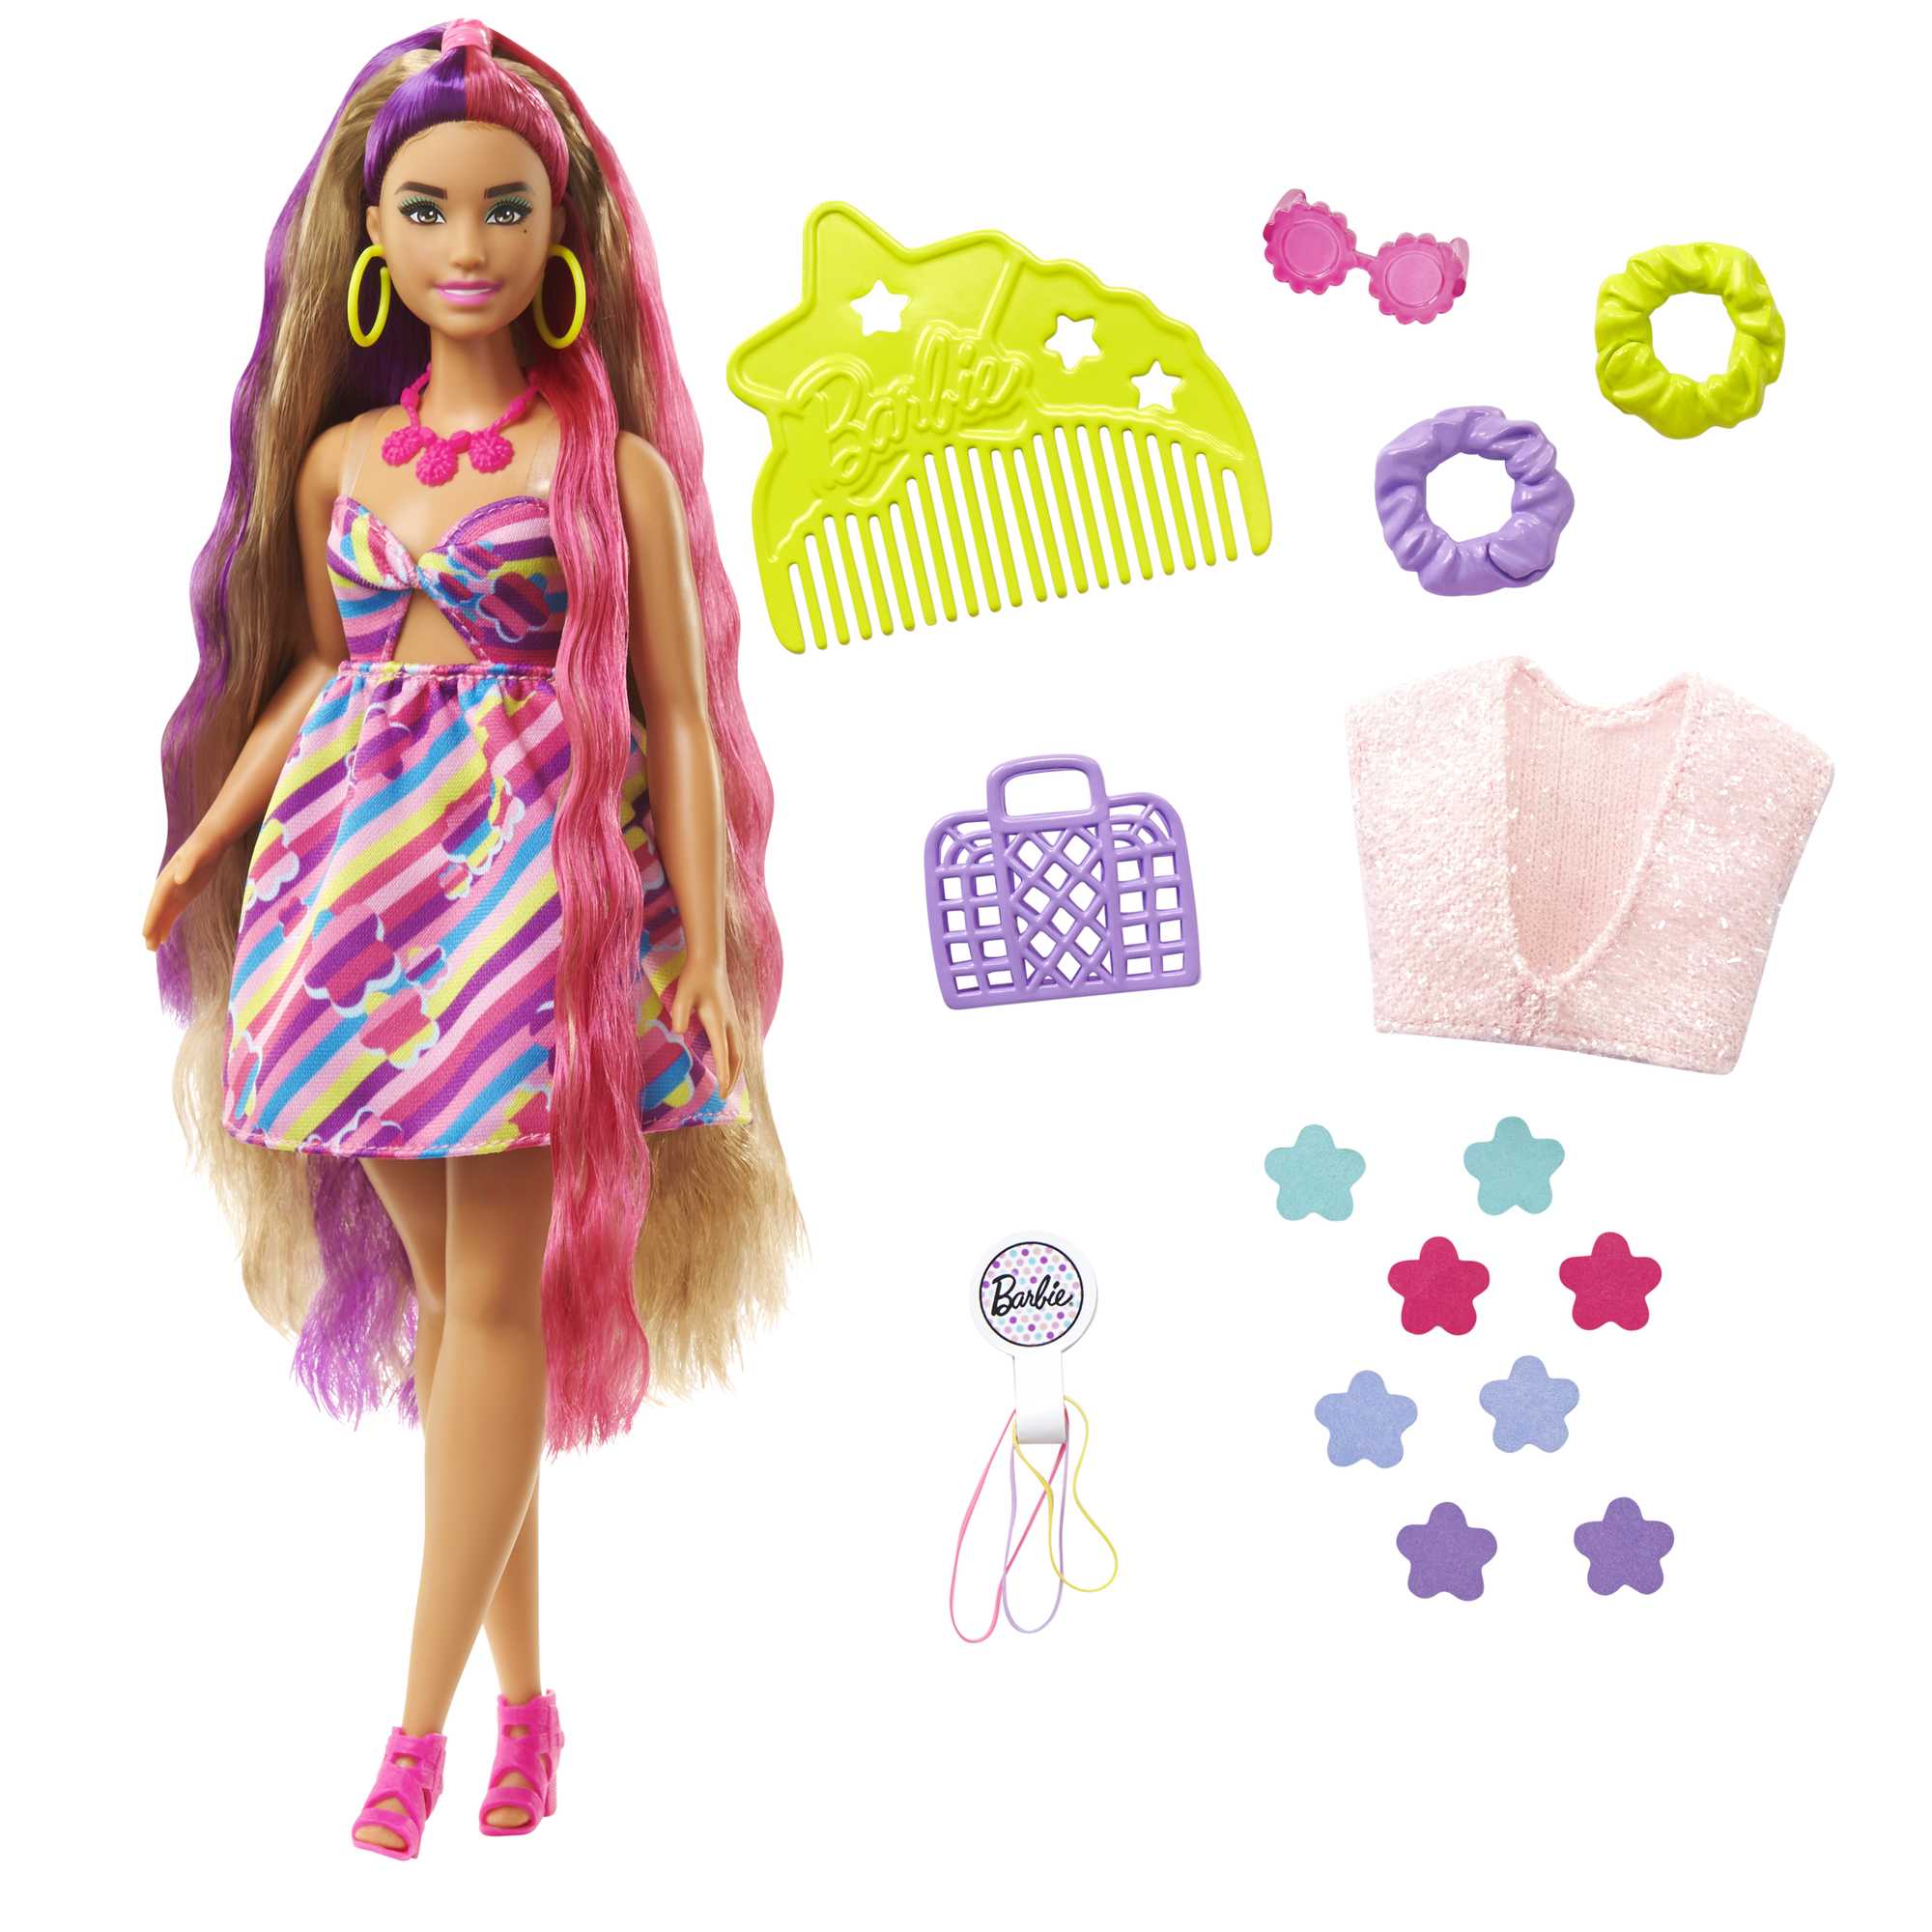 Barbie - Boneca Fashionista Curvy Vitiligo - Vestido com bolas, FASHIONISTAS